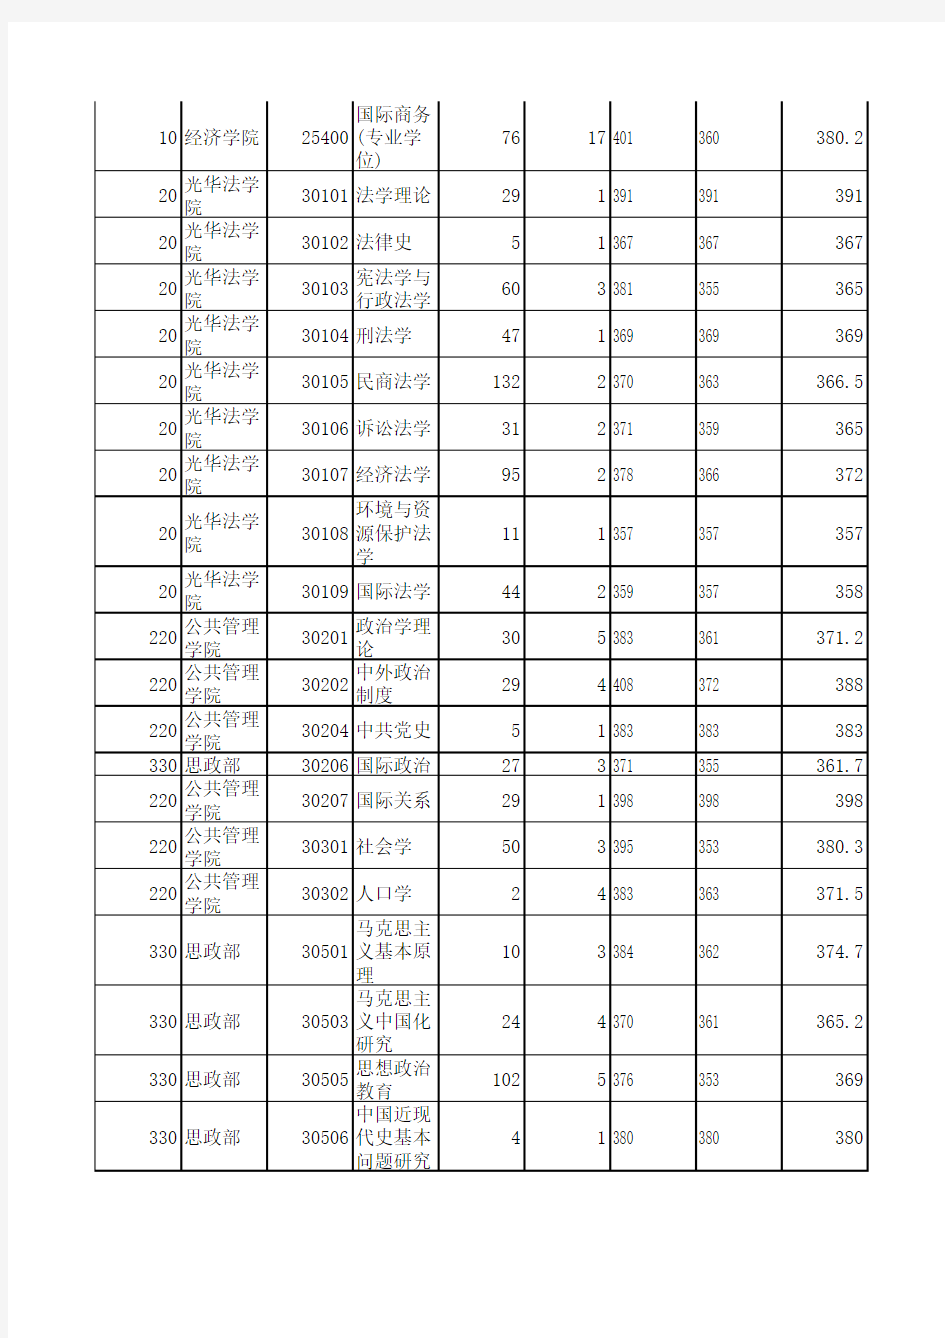 浙江大学2012年硕士报考录取人数统计表